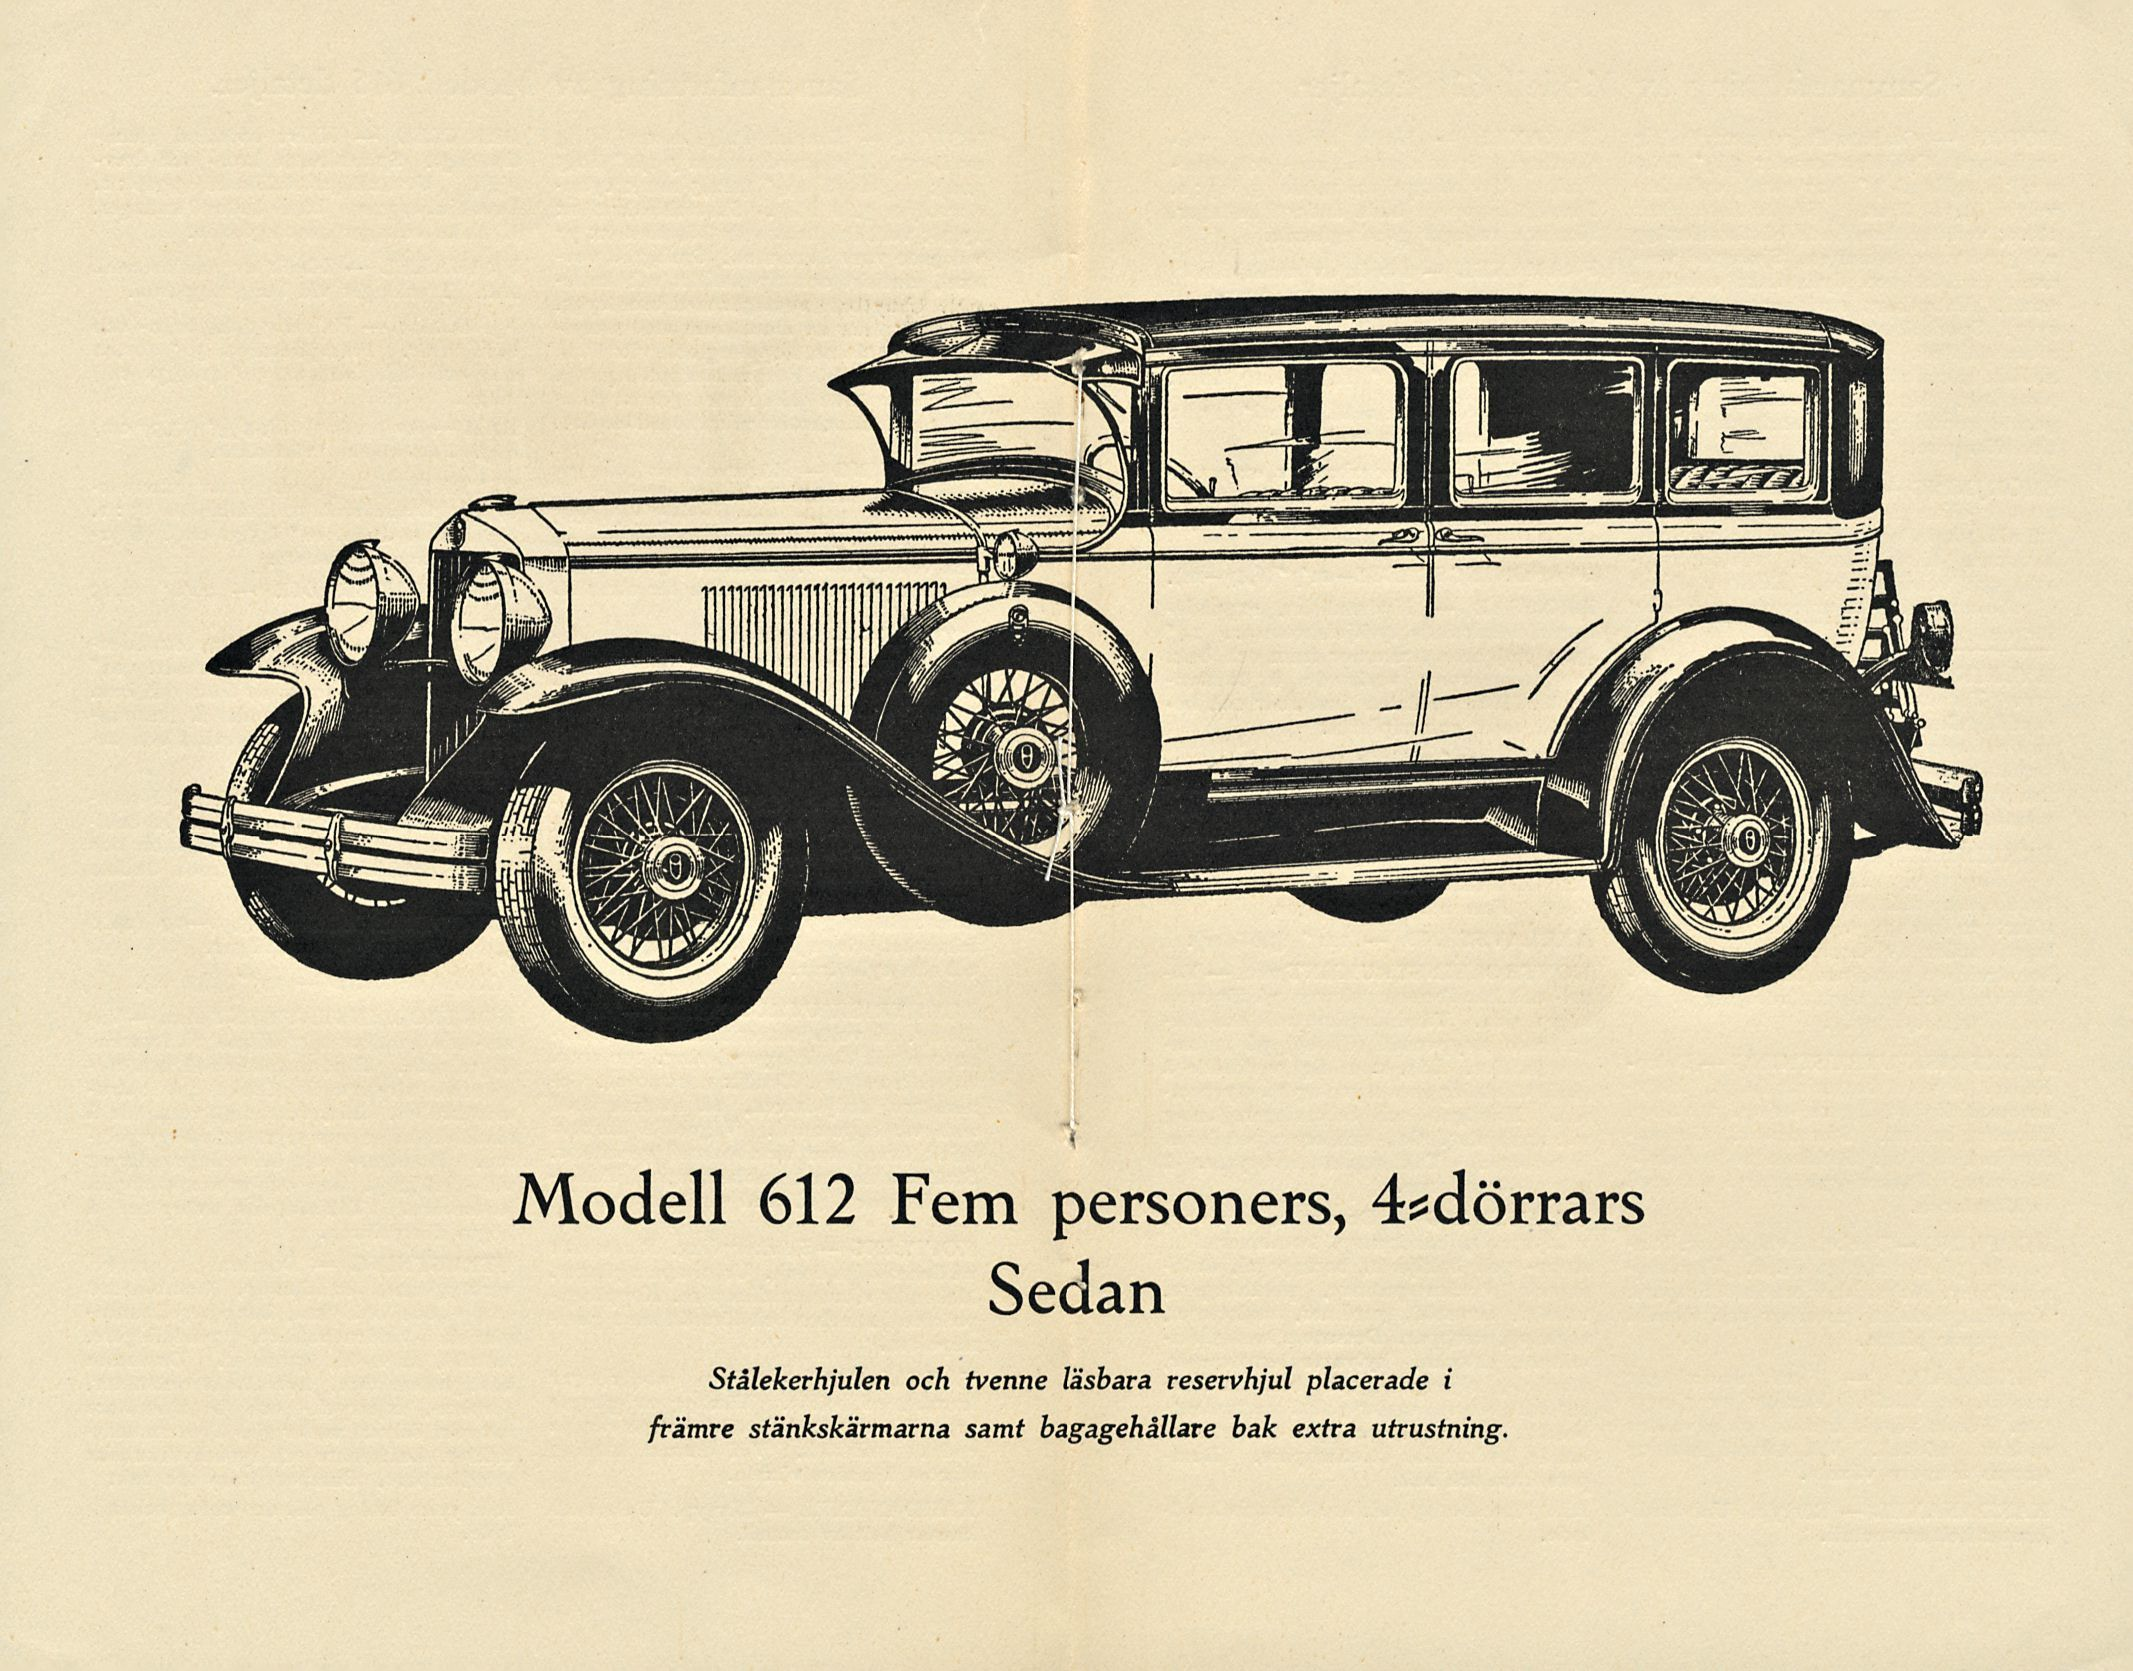 Modell 612 Fem personers, Sedan Stålekerhjulen och tvenne läsbara